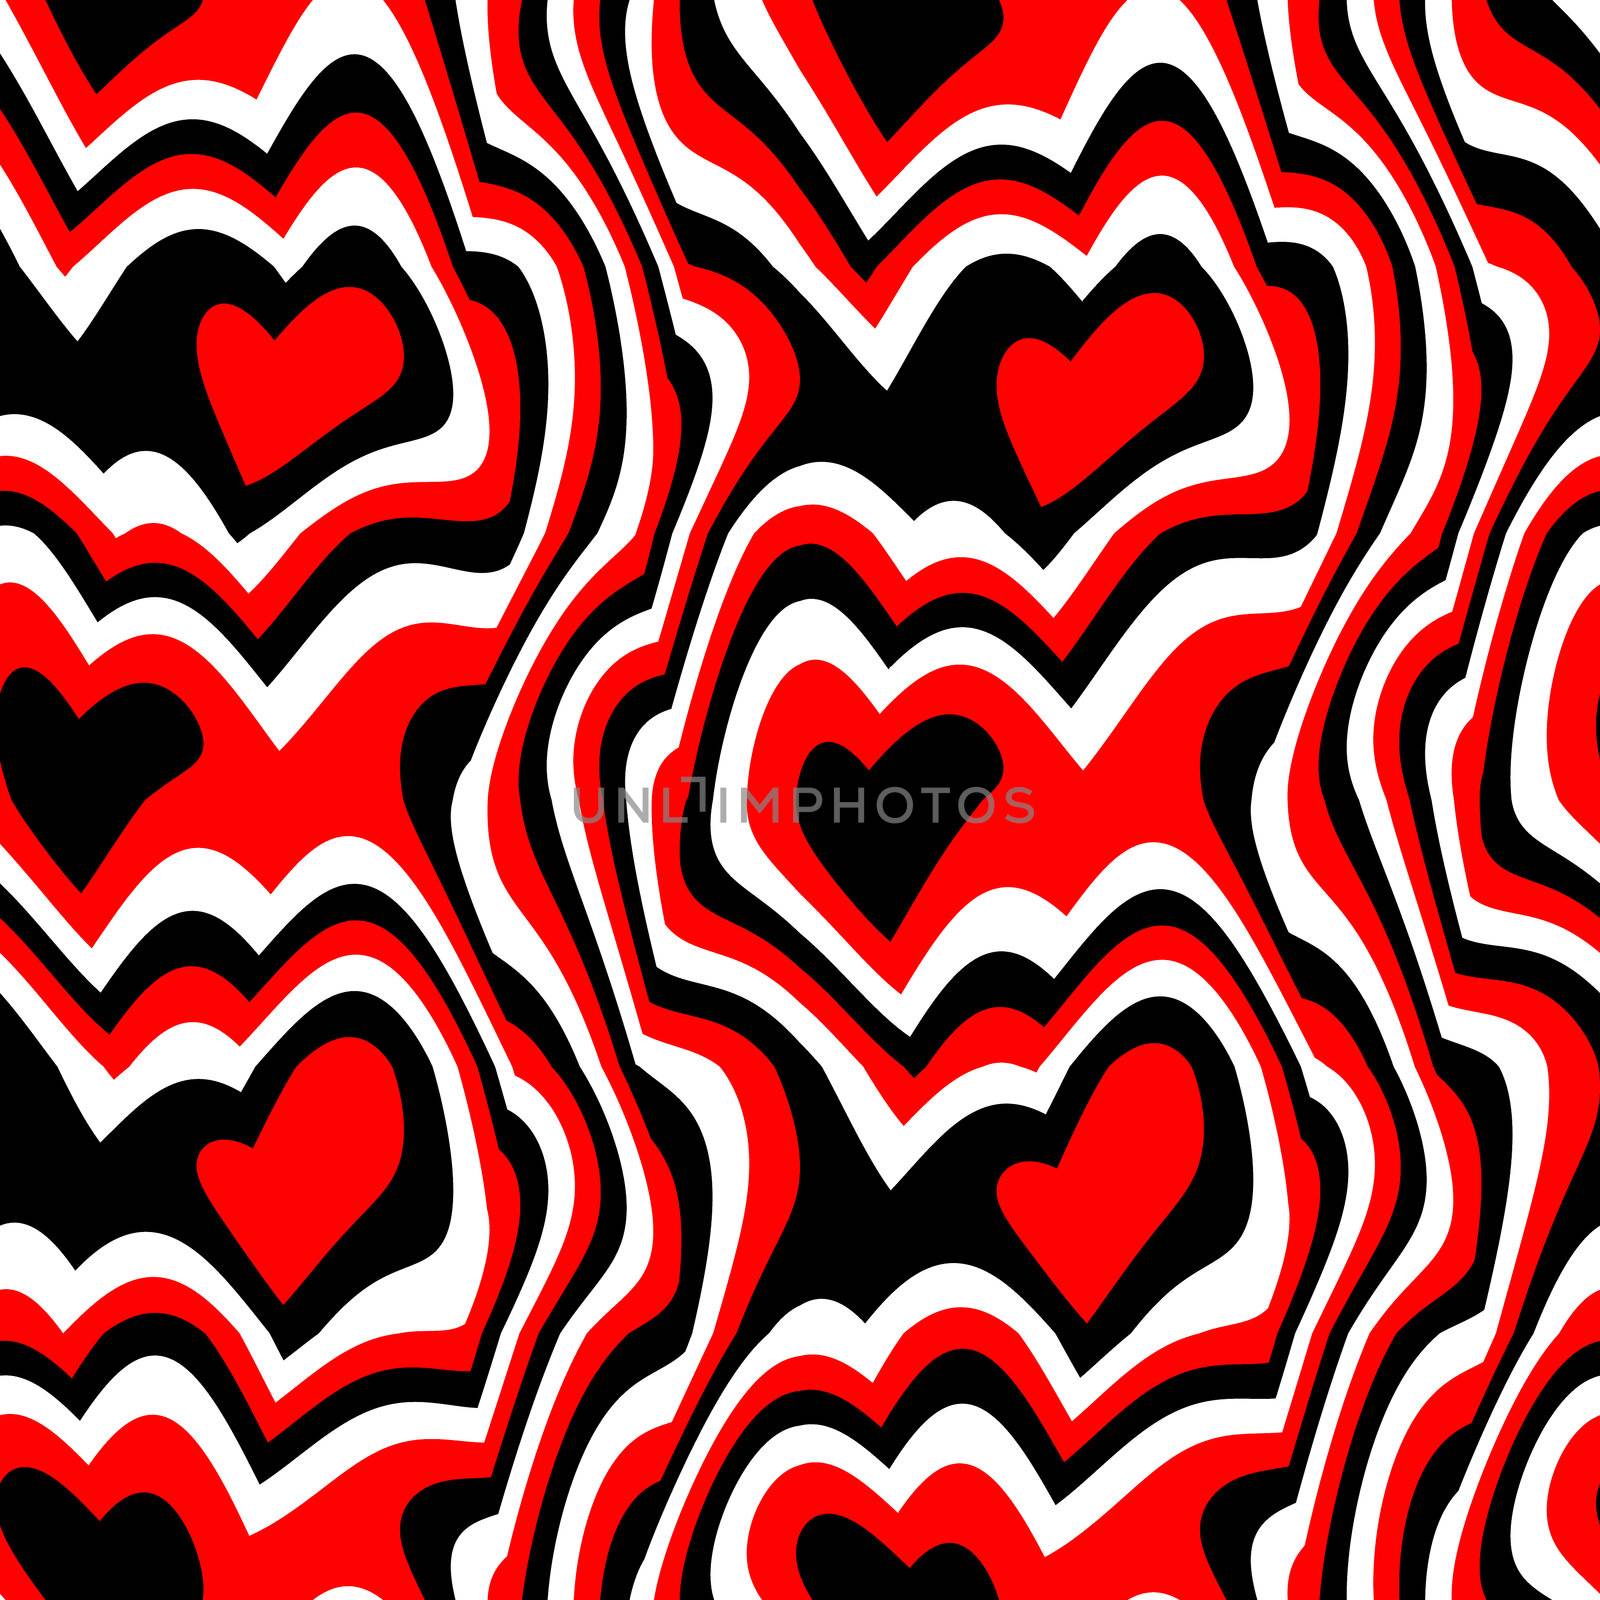 red black hearts by hospitalera